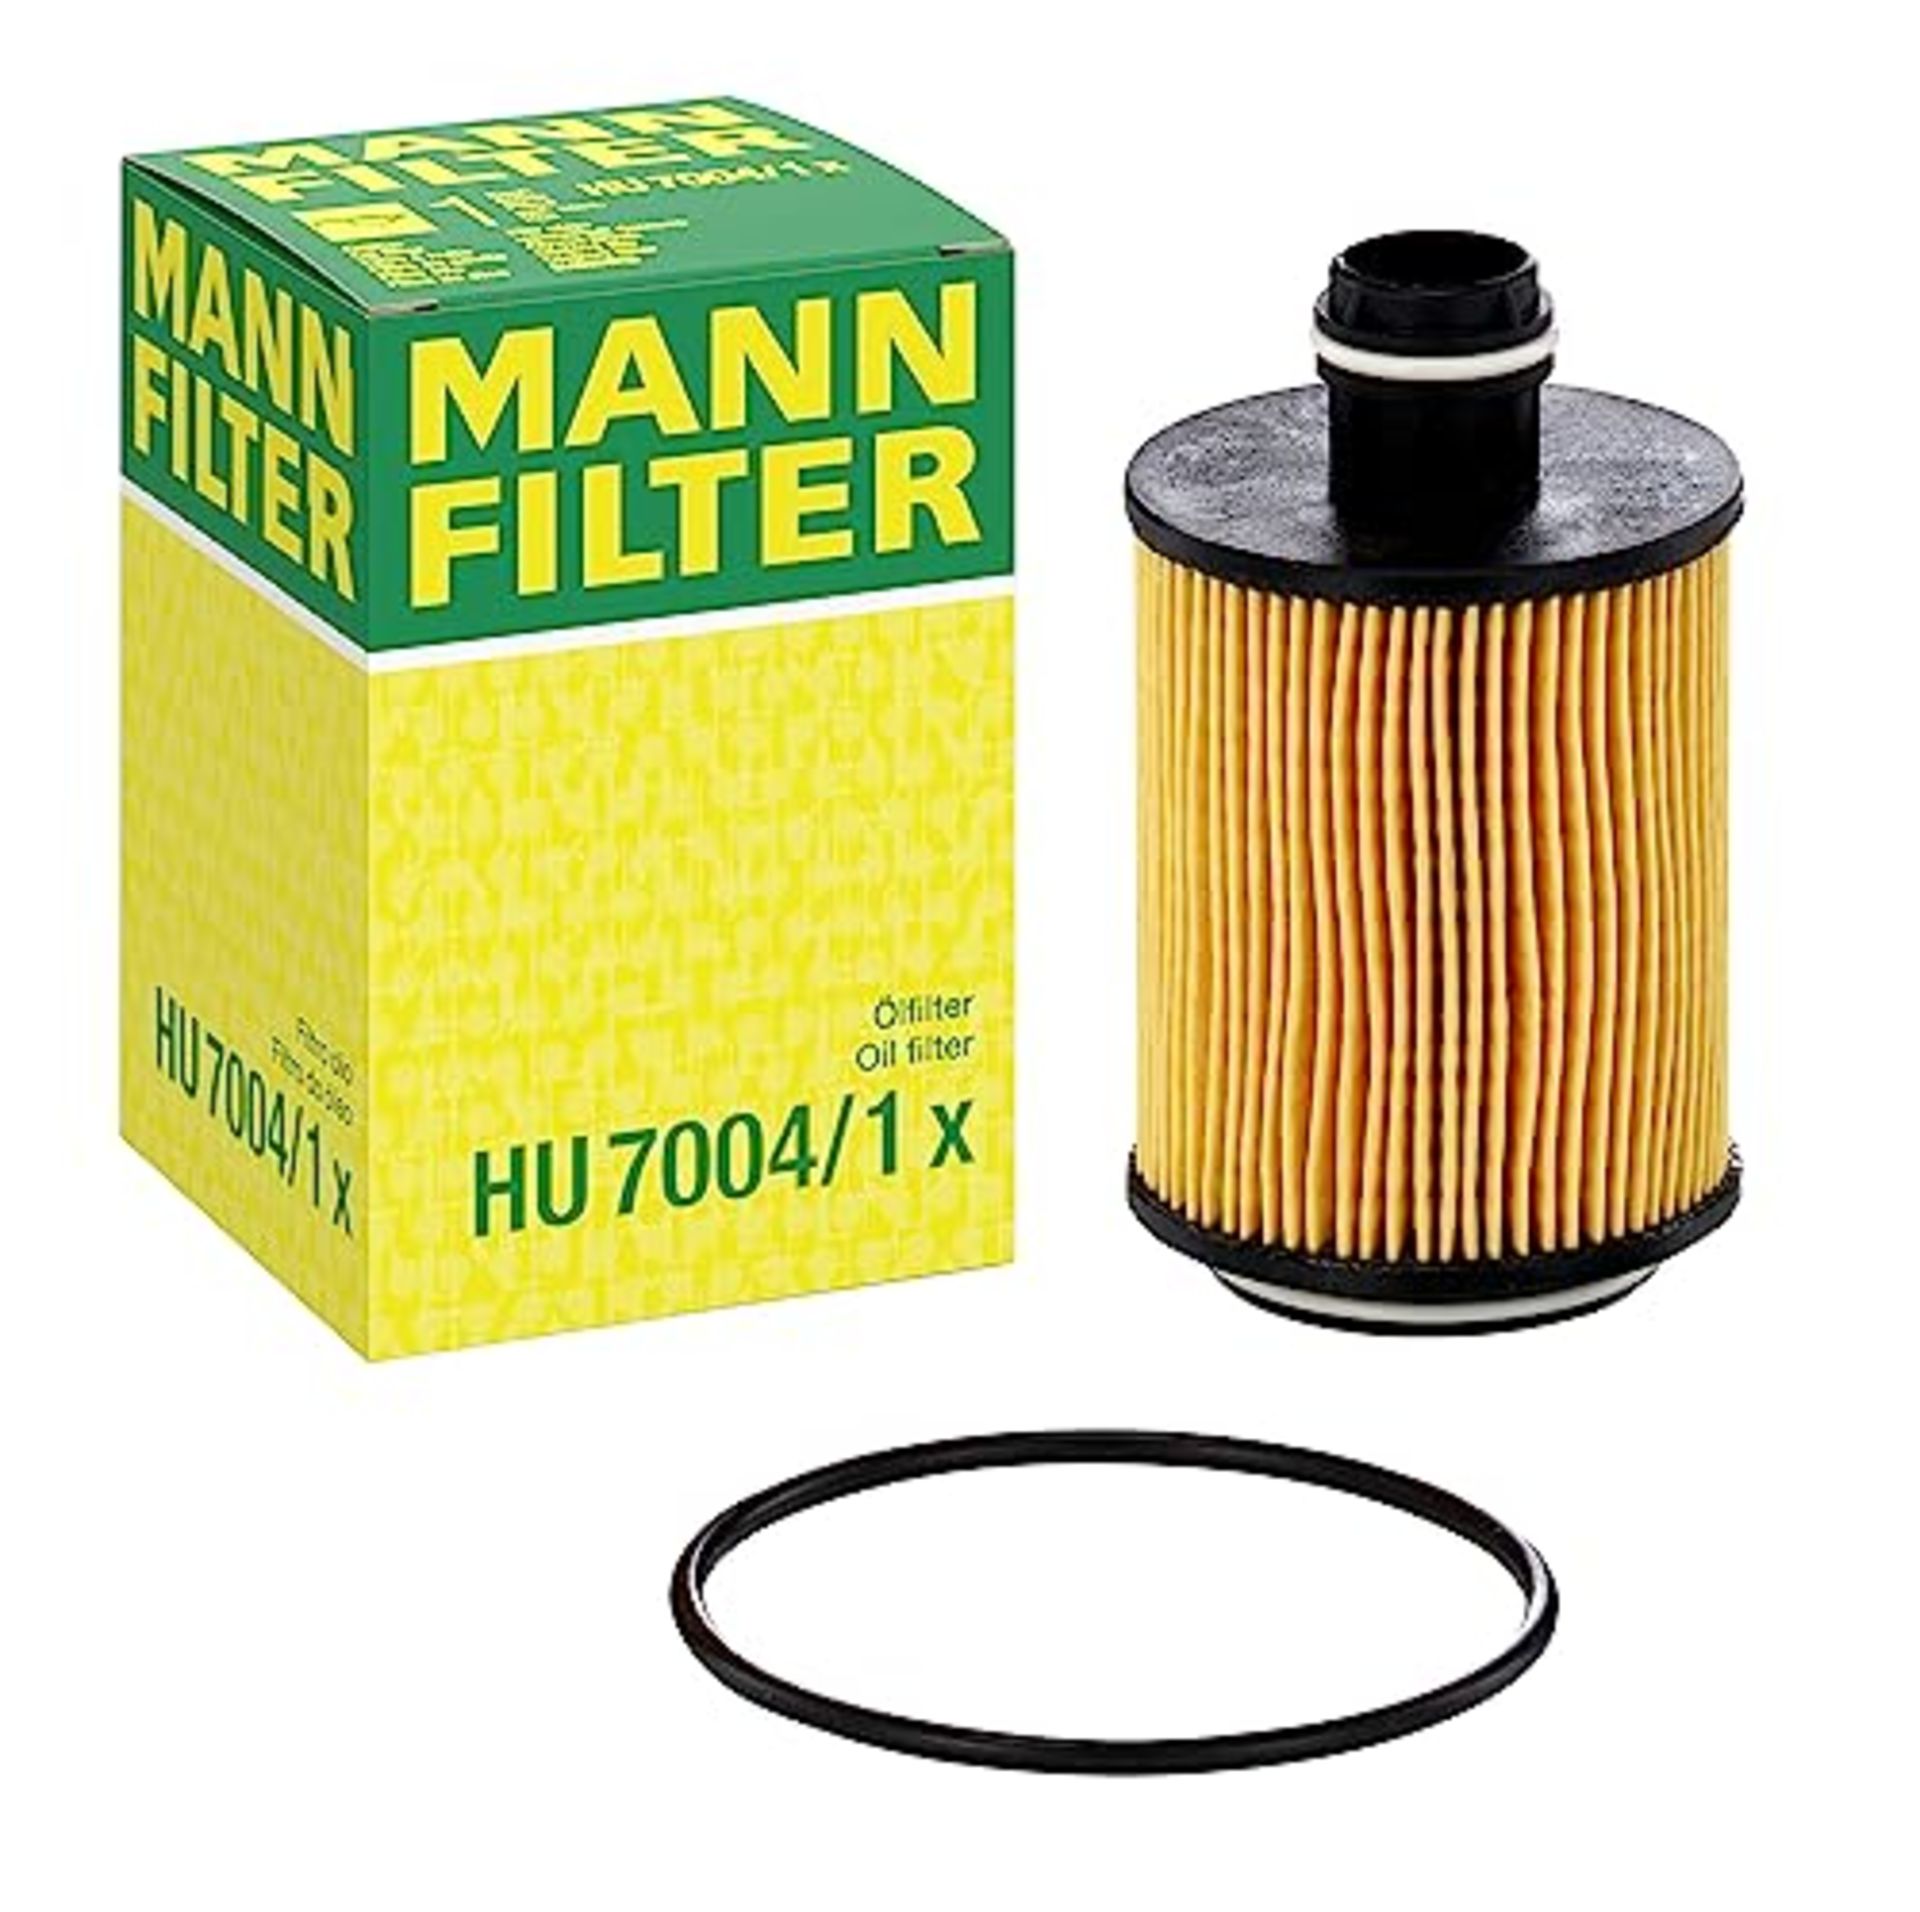 MANN-FILTER HU 7004/1 X Oil Filter Oil Filter Set with Gasket / Gasket Set  For Pas